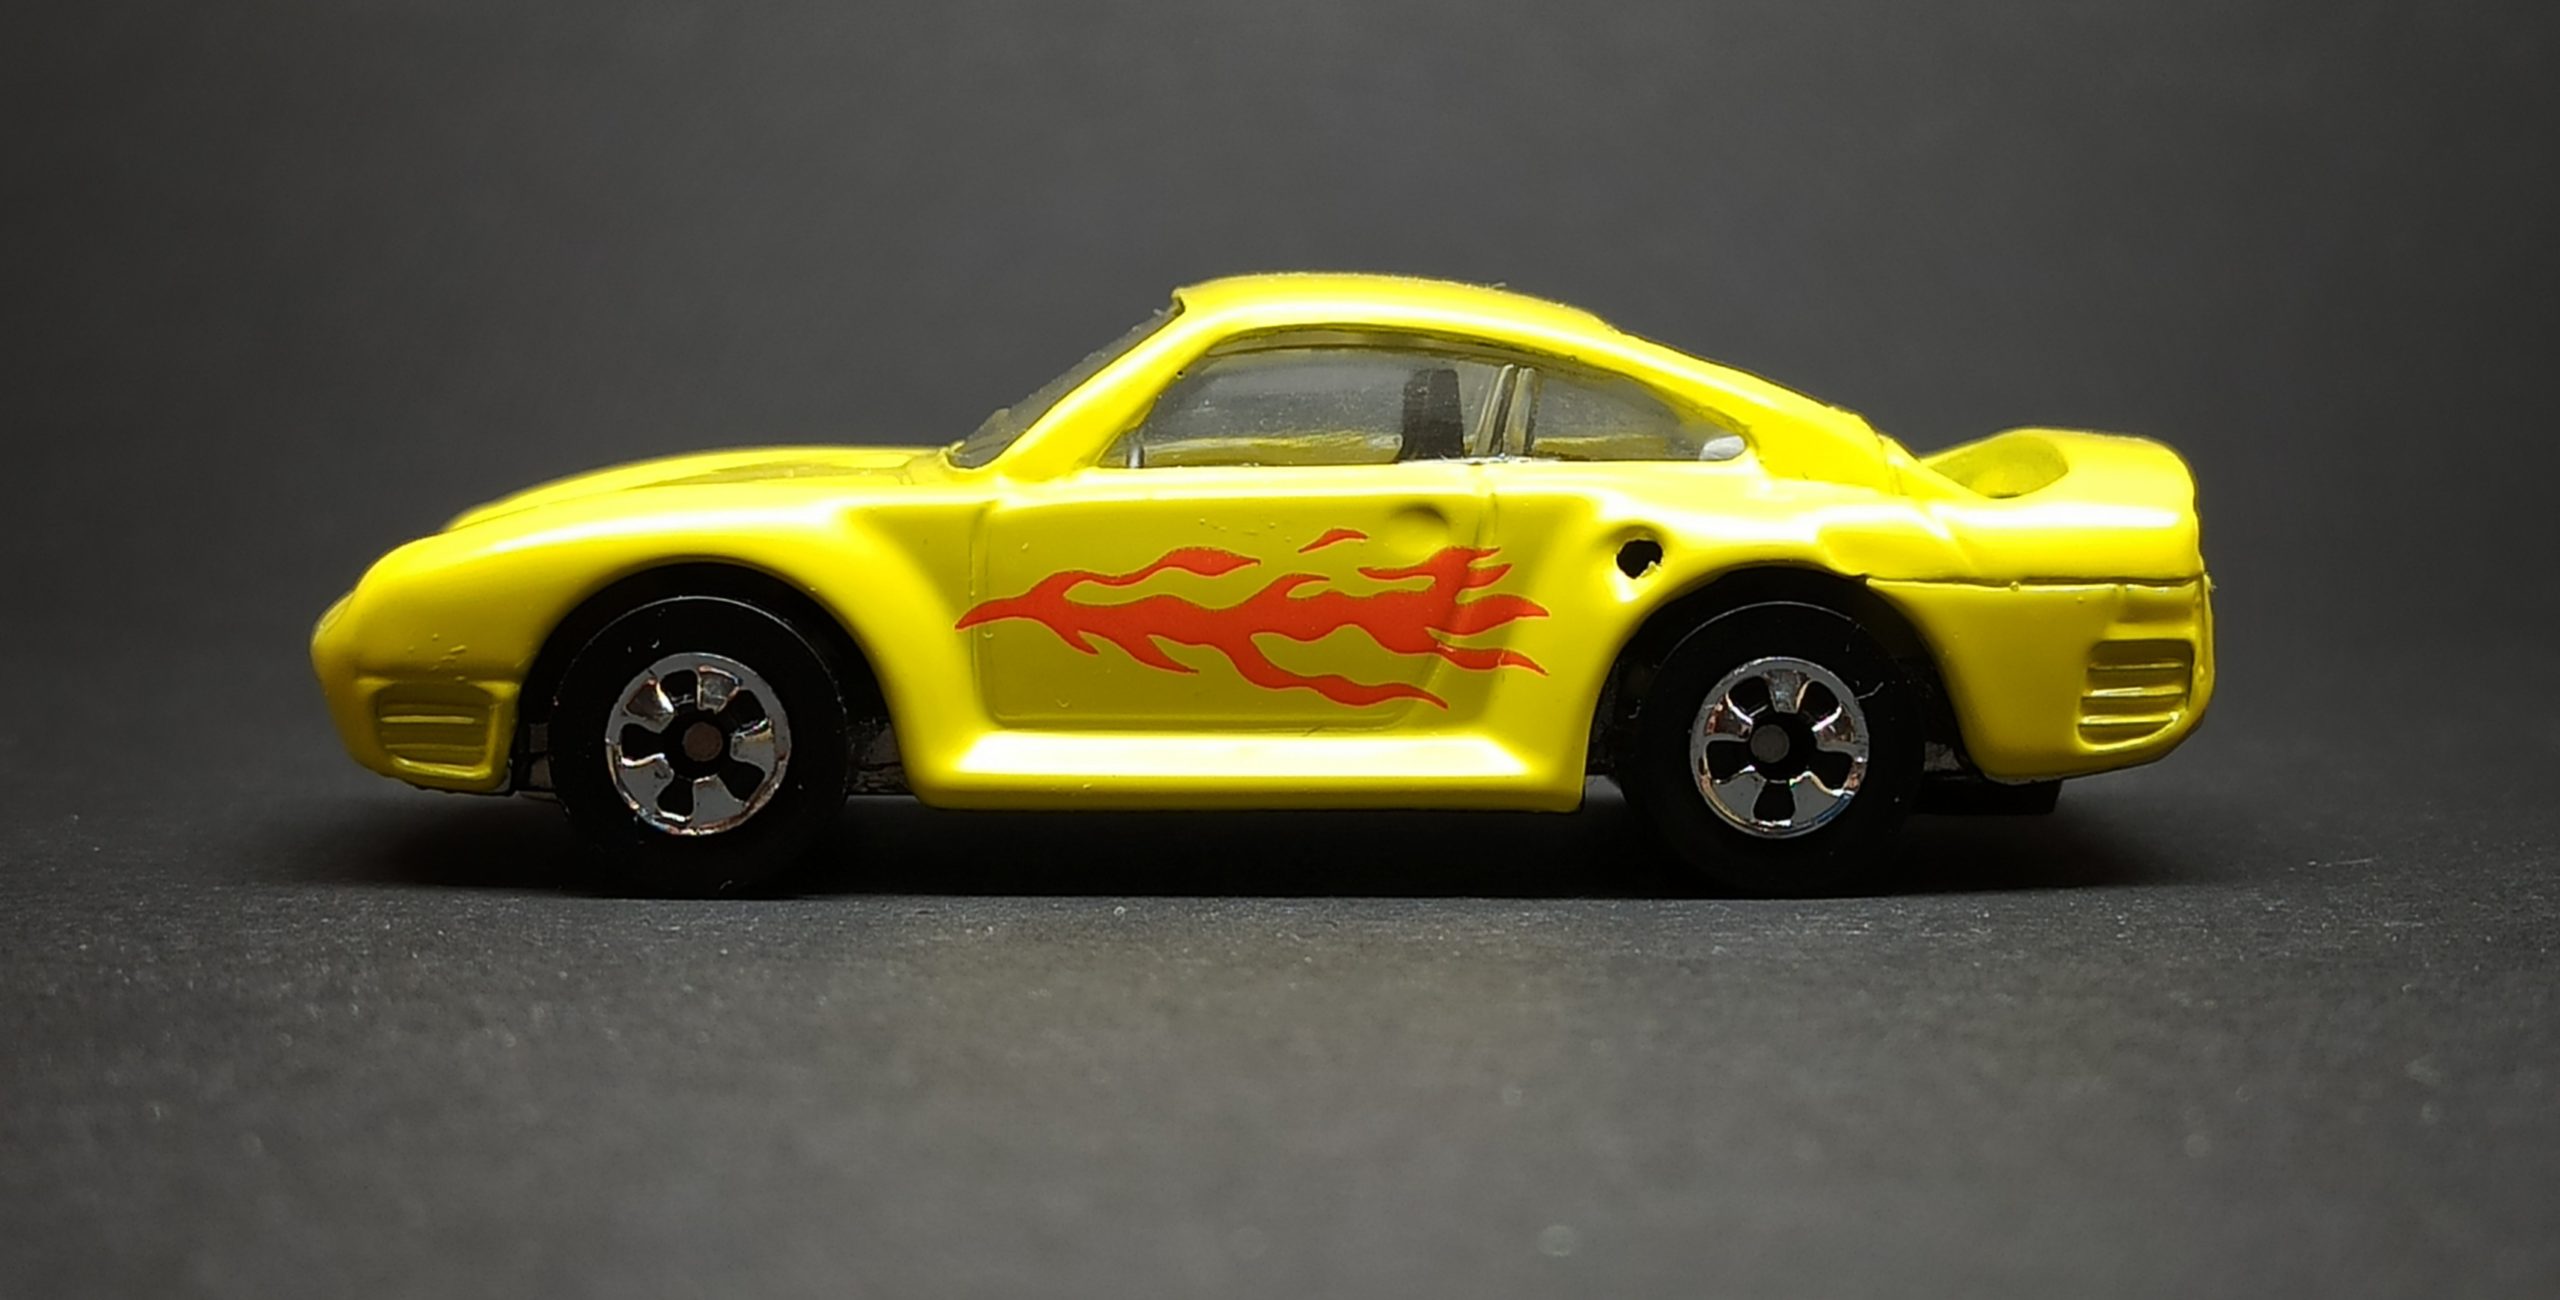 Hot Wheels Porsche 959 (4631) 1995 Sto & Go Parking Garage set yellow